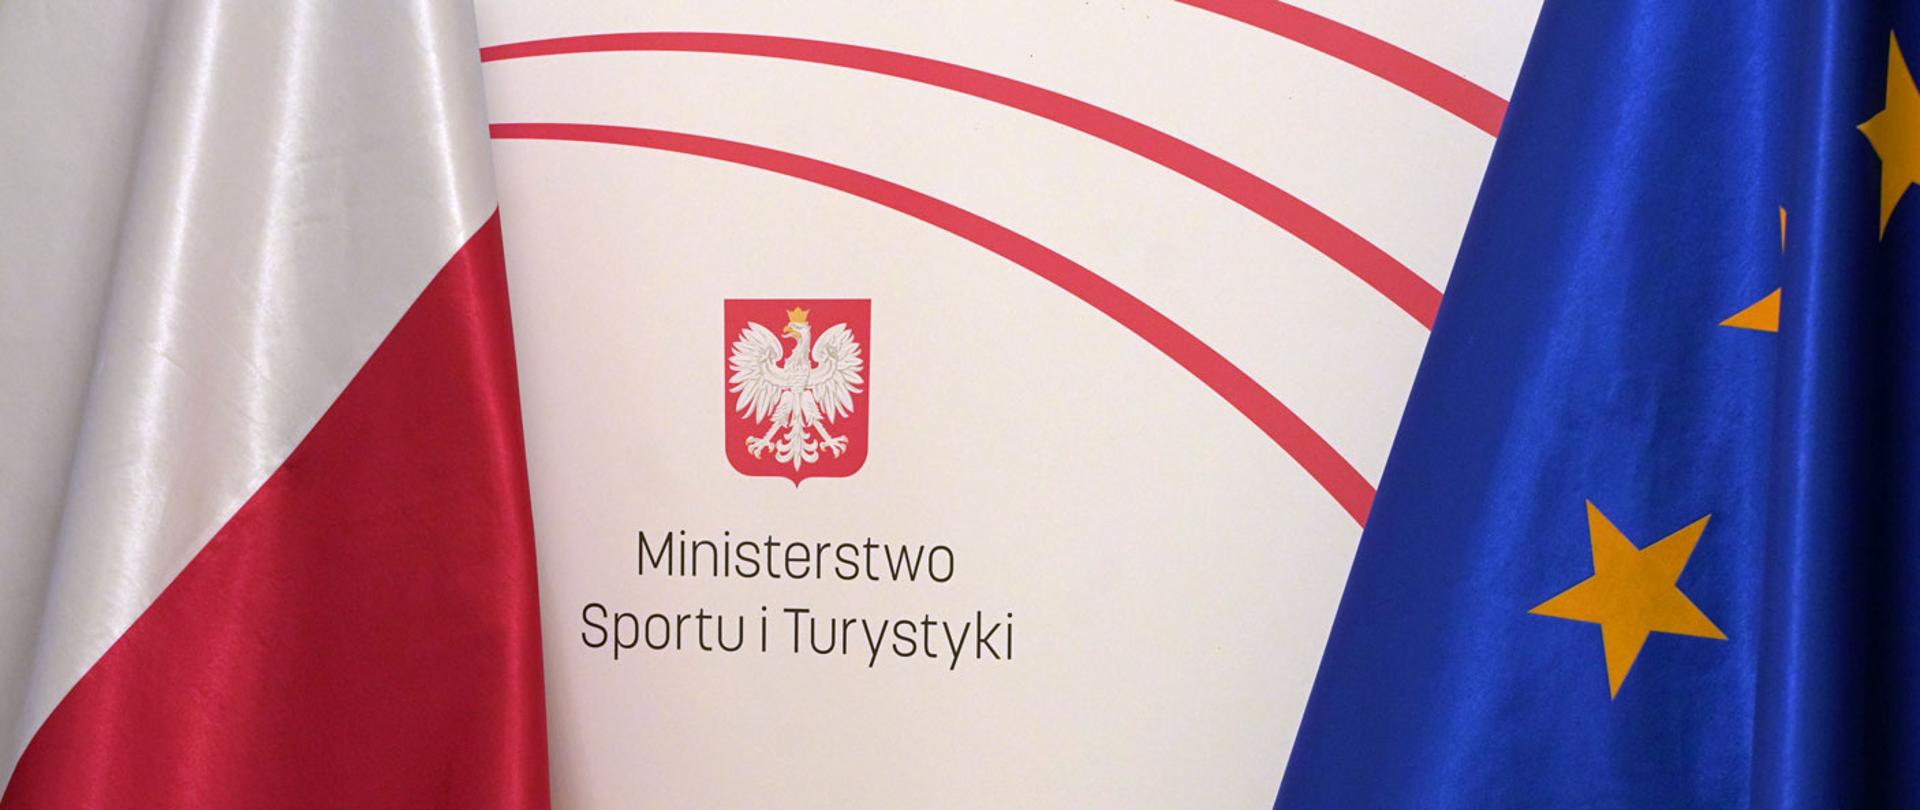 Flagi Polski i Unii Europejskiej, na środku logo i napis Ministerstwo Sportu i Turystyki